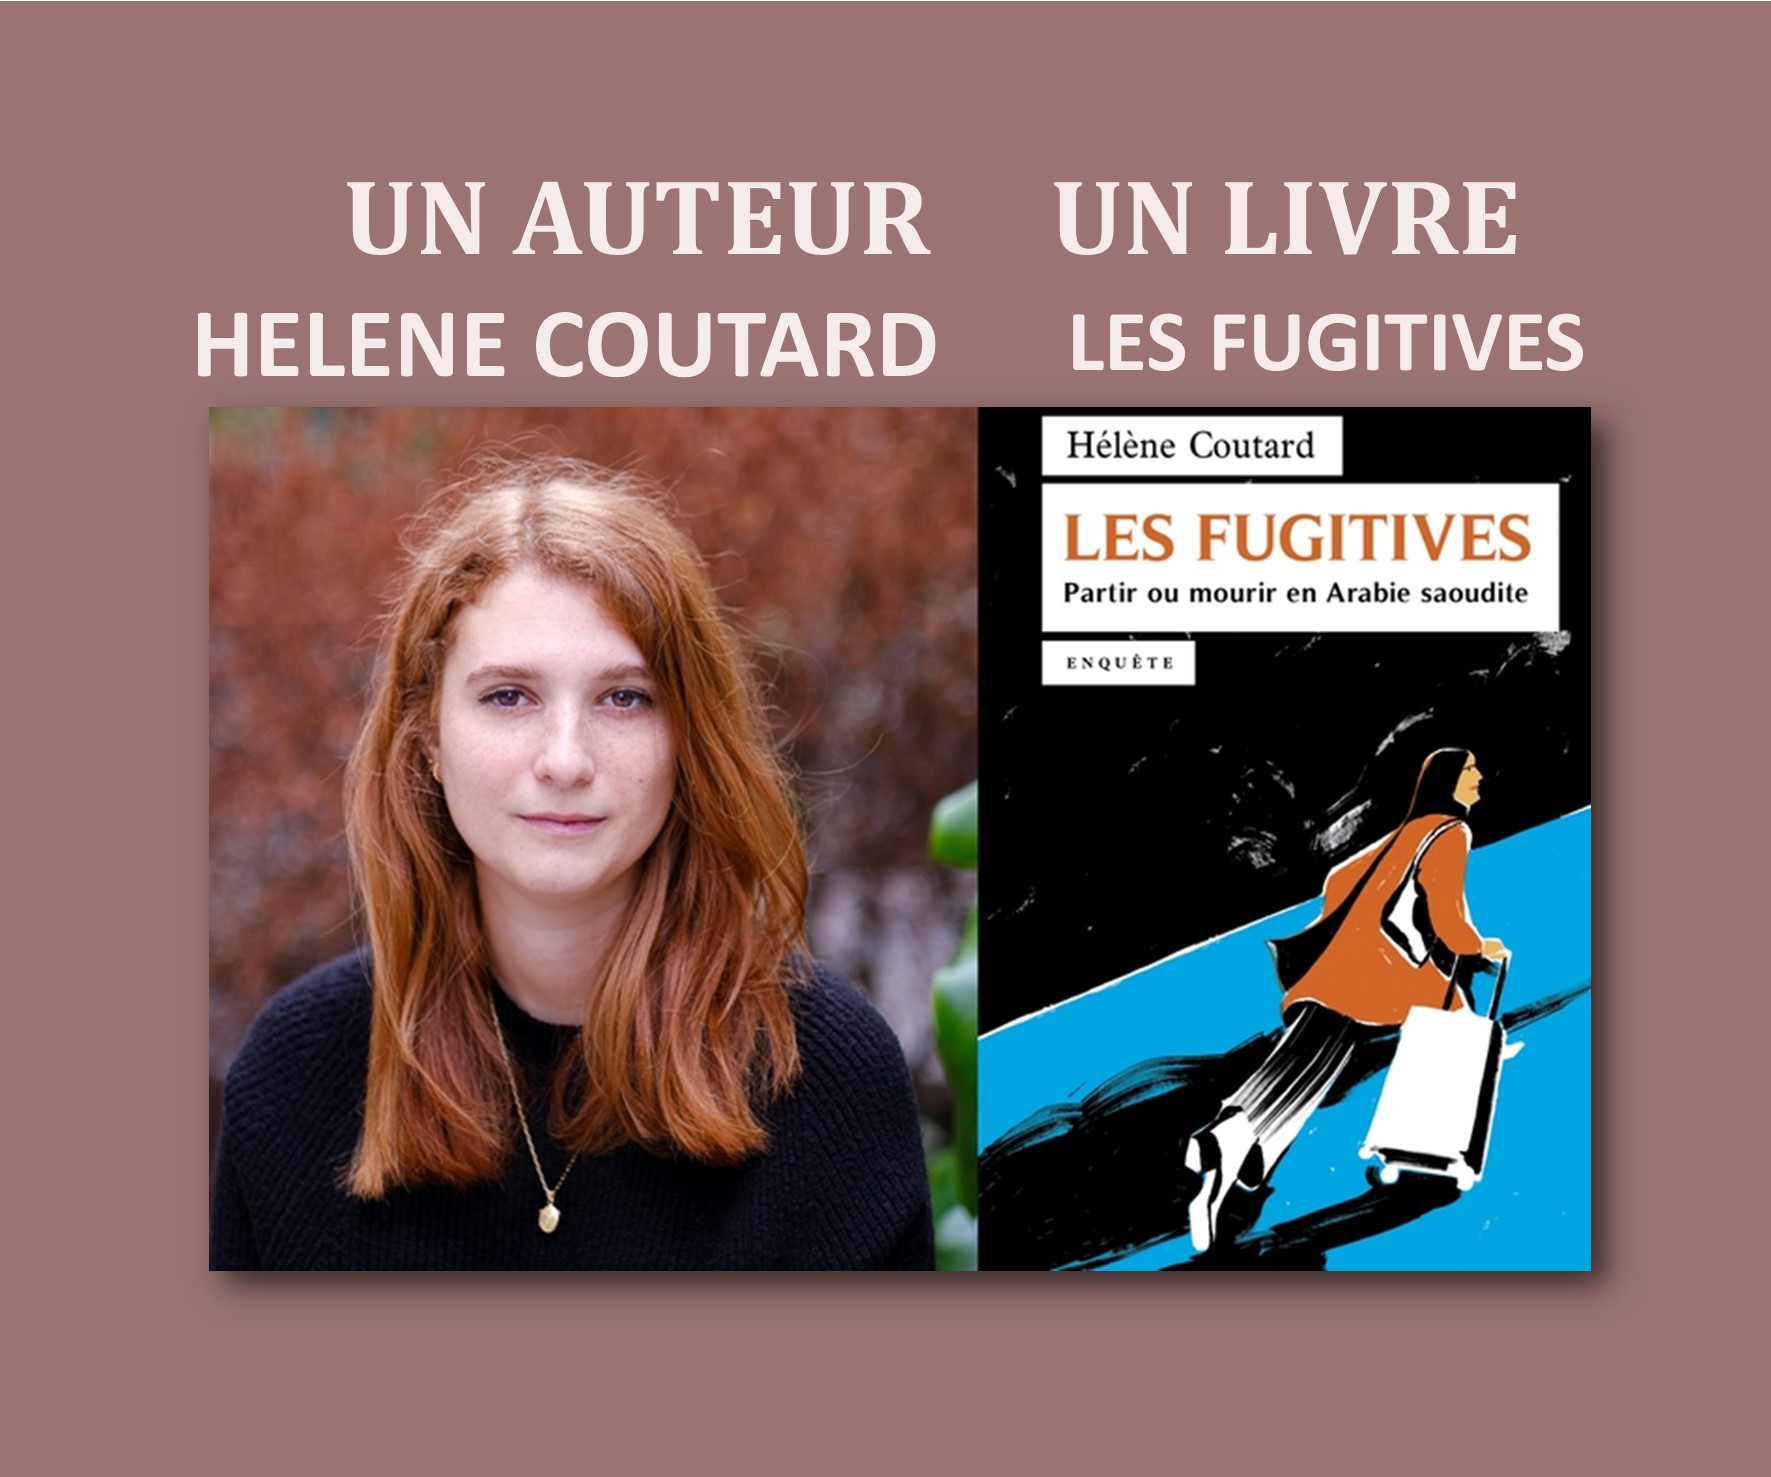 Un auteur un livre : Les Fugitives d'Hélène Coutard